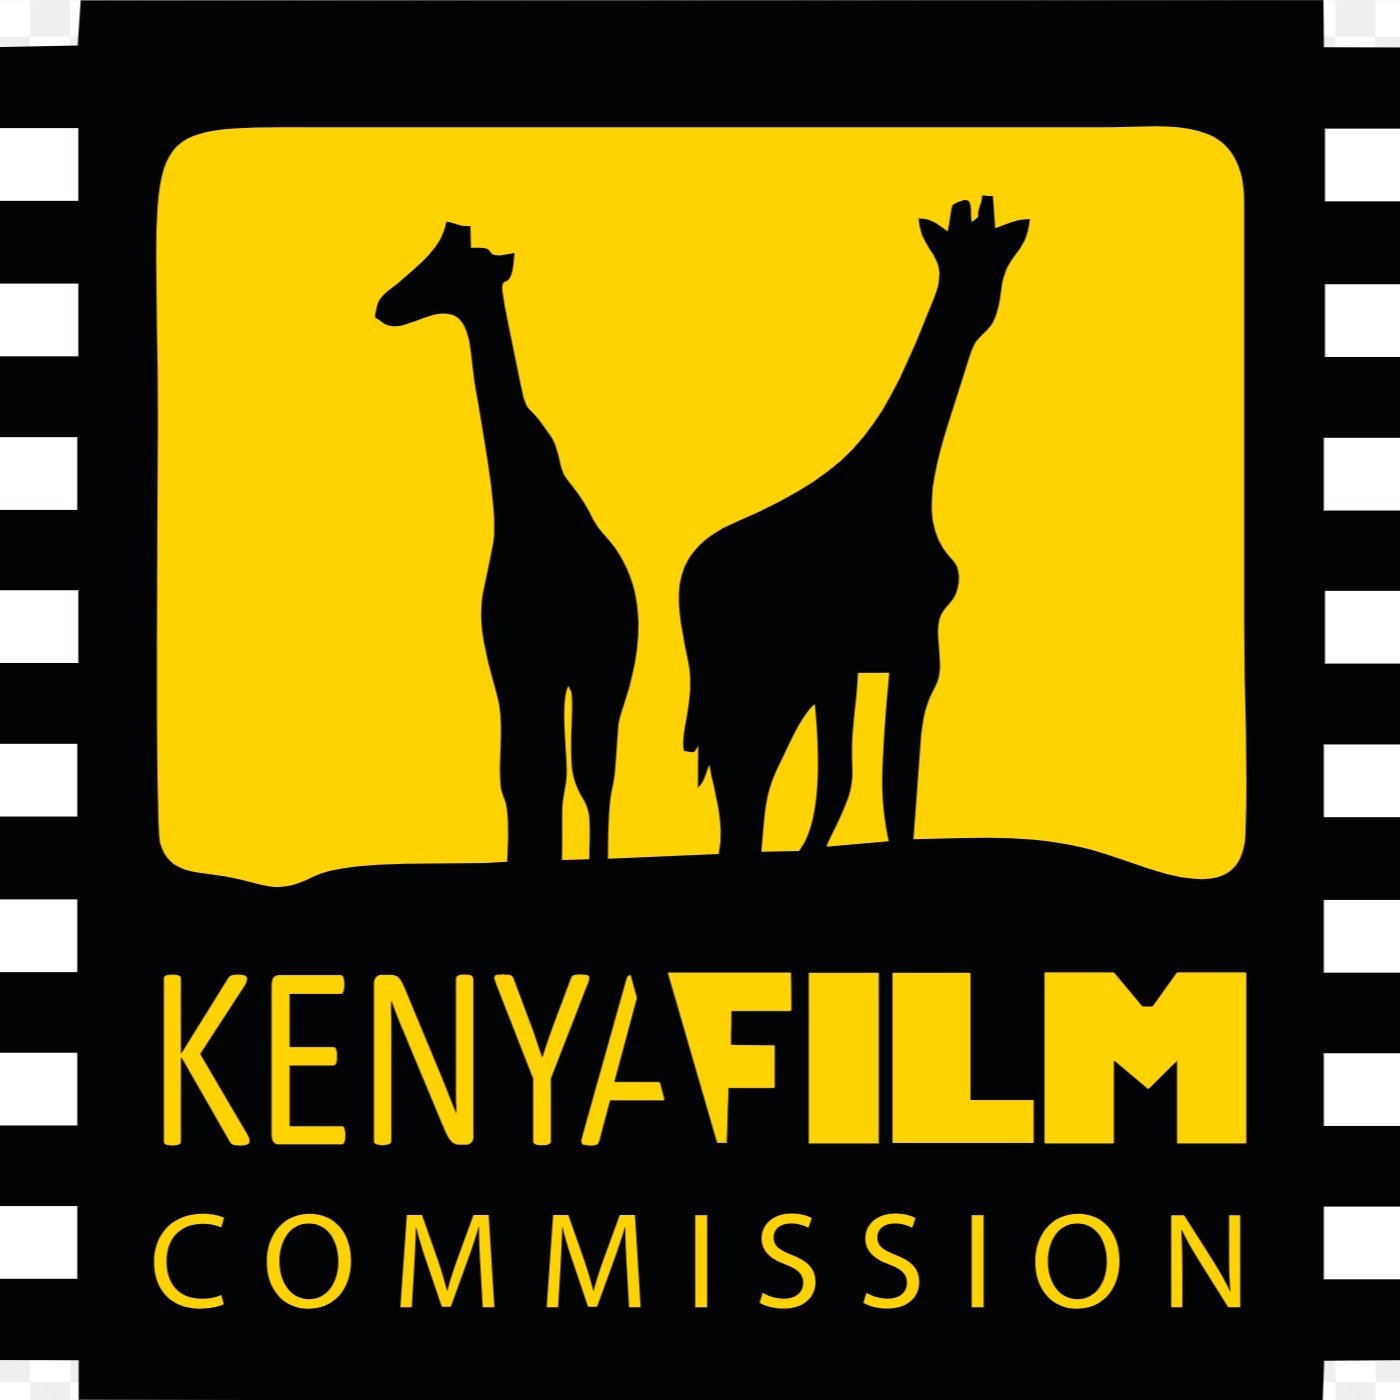 Kenya Film Commission